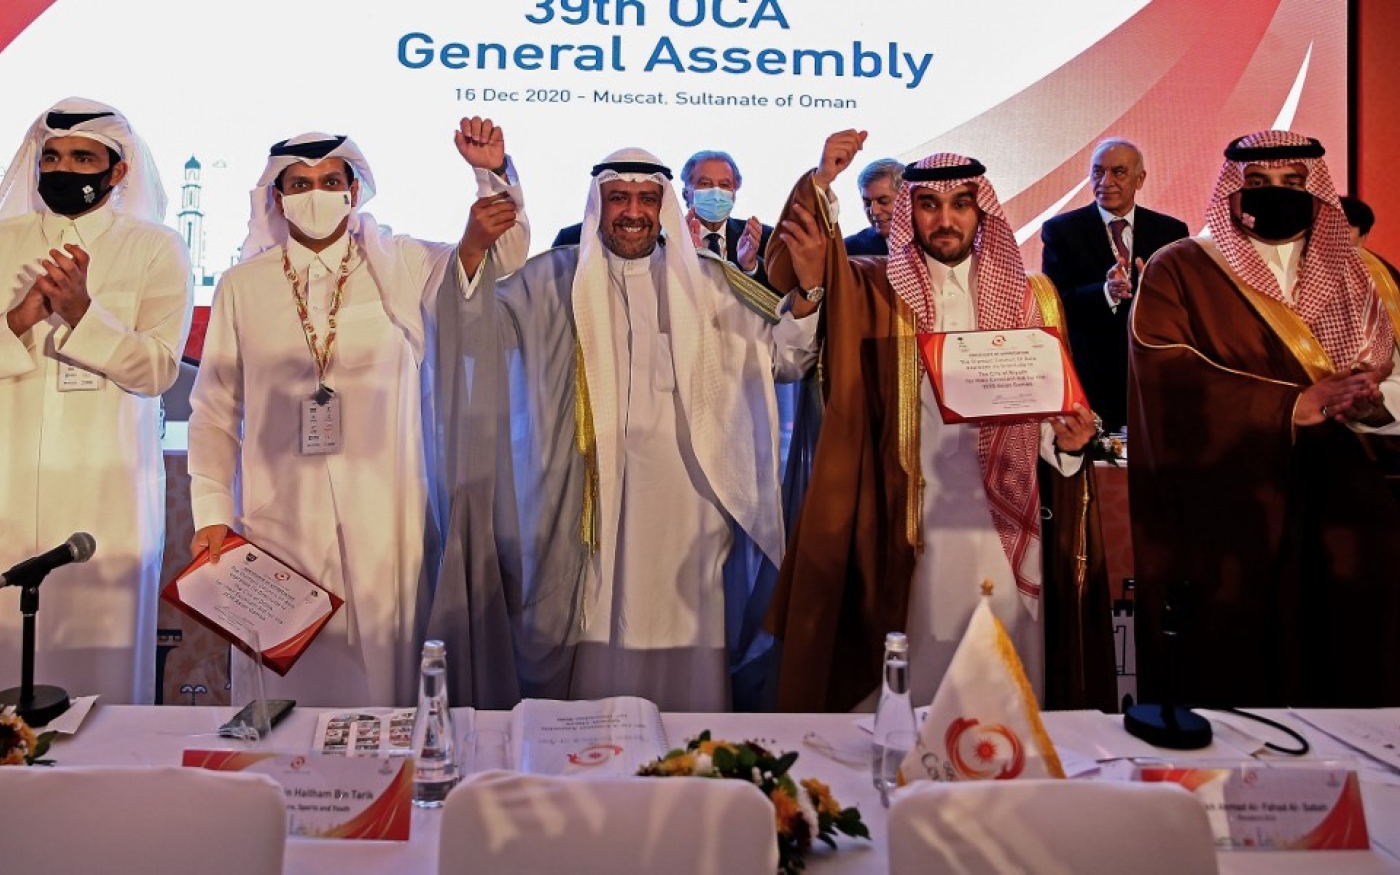 Les officiels qataris lors de la 39e réunion de l’Assemblée générale du Conseil olympique d’Asie à Mascate, le 16 décembre 2020, en apprenant que Doha accueillera les Jeux asiatiques de 2030 (AFP)